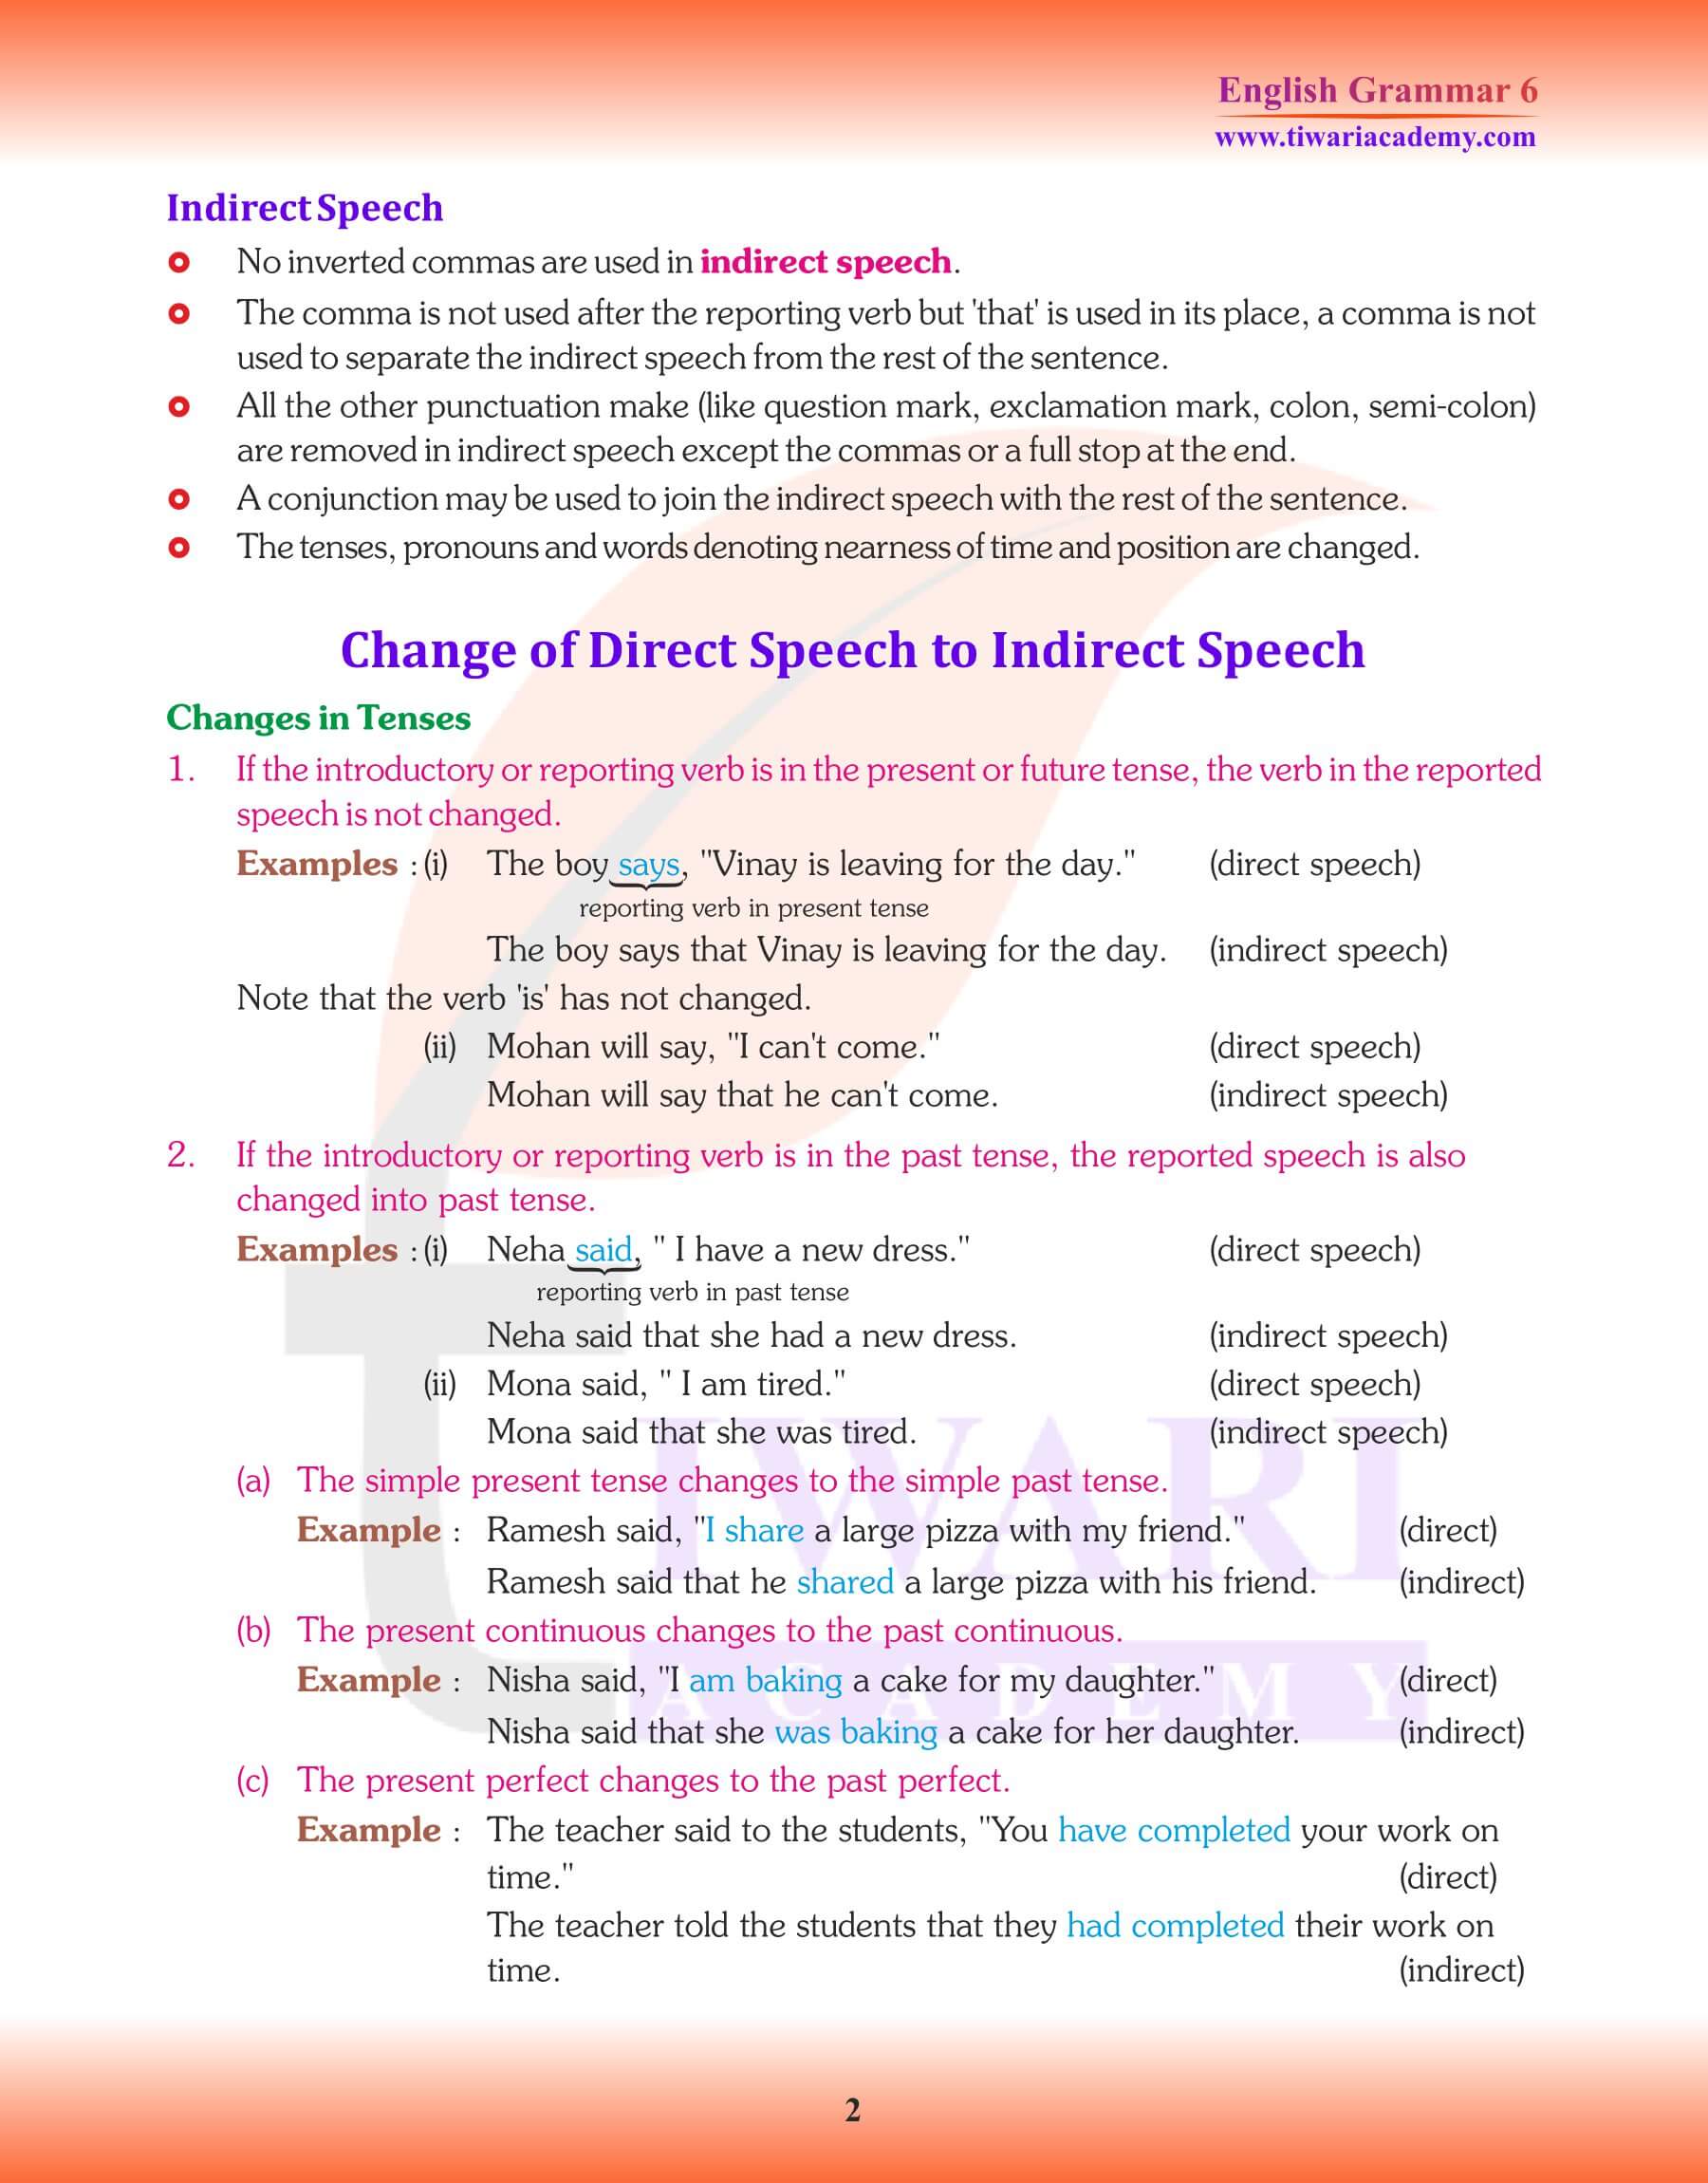 Class 6 Grammar Direct and Indirect Speech Notes